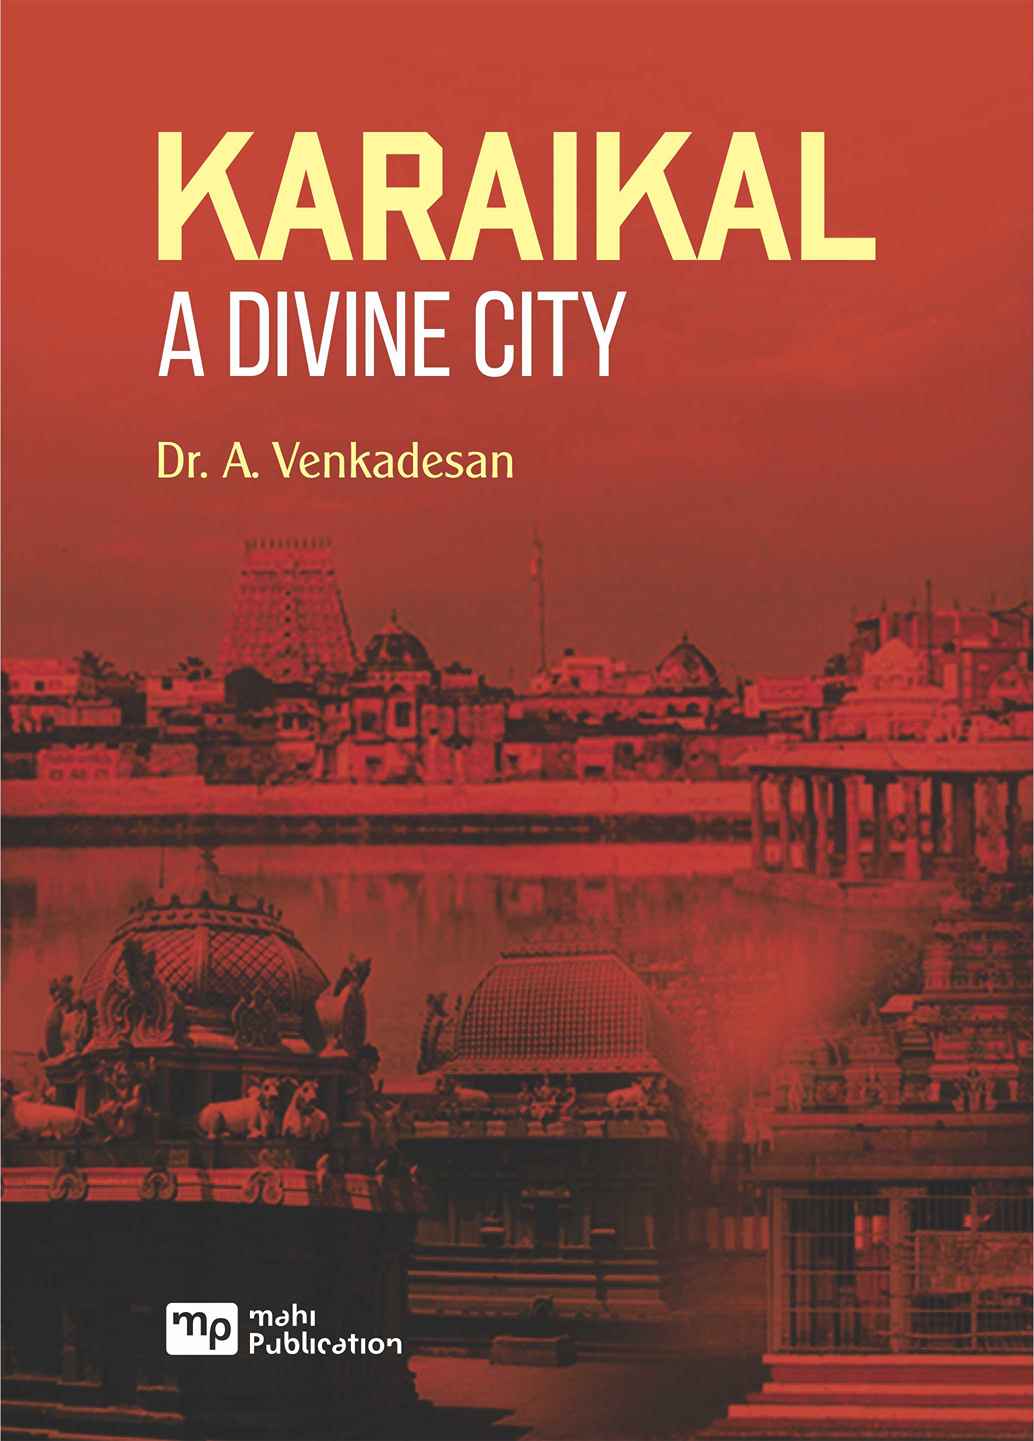 Karaikal A Divine City